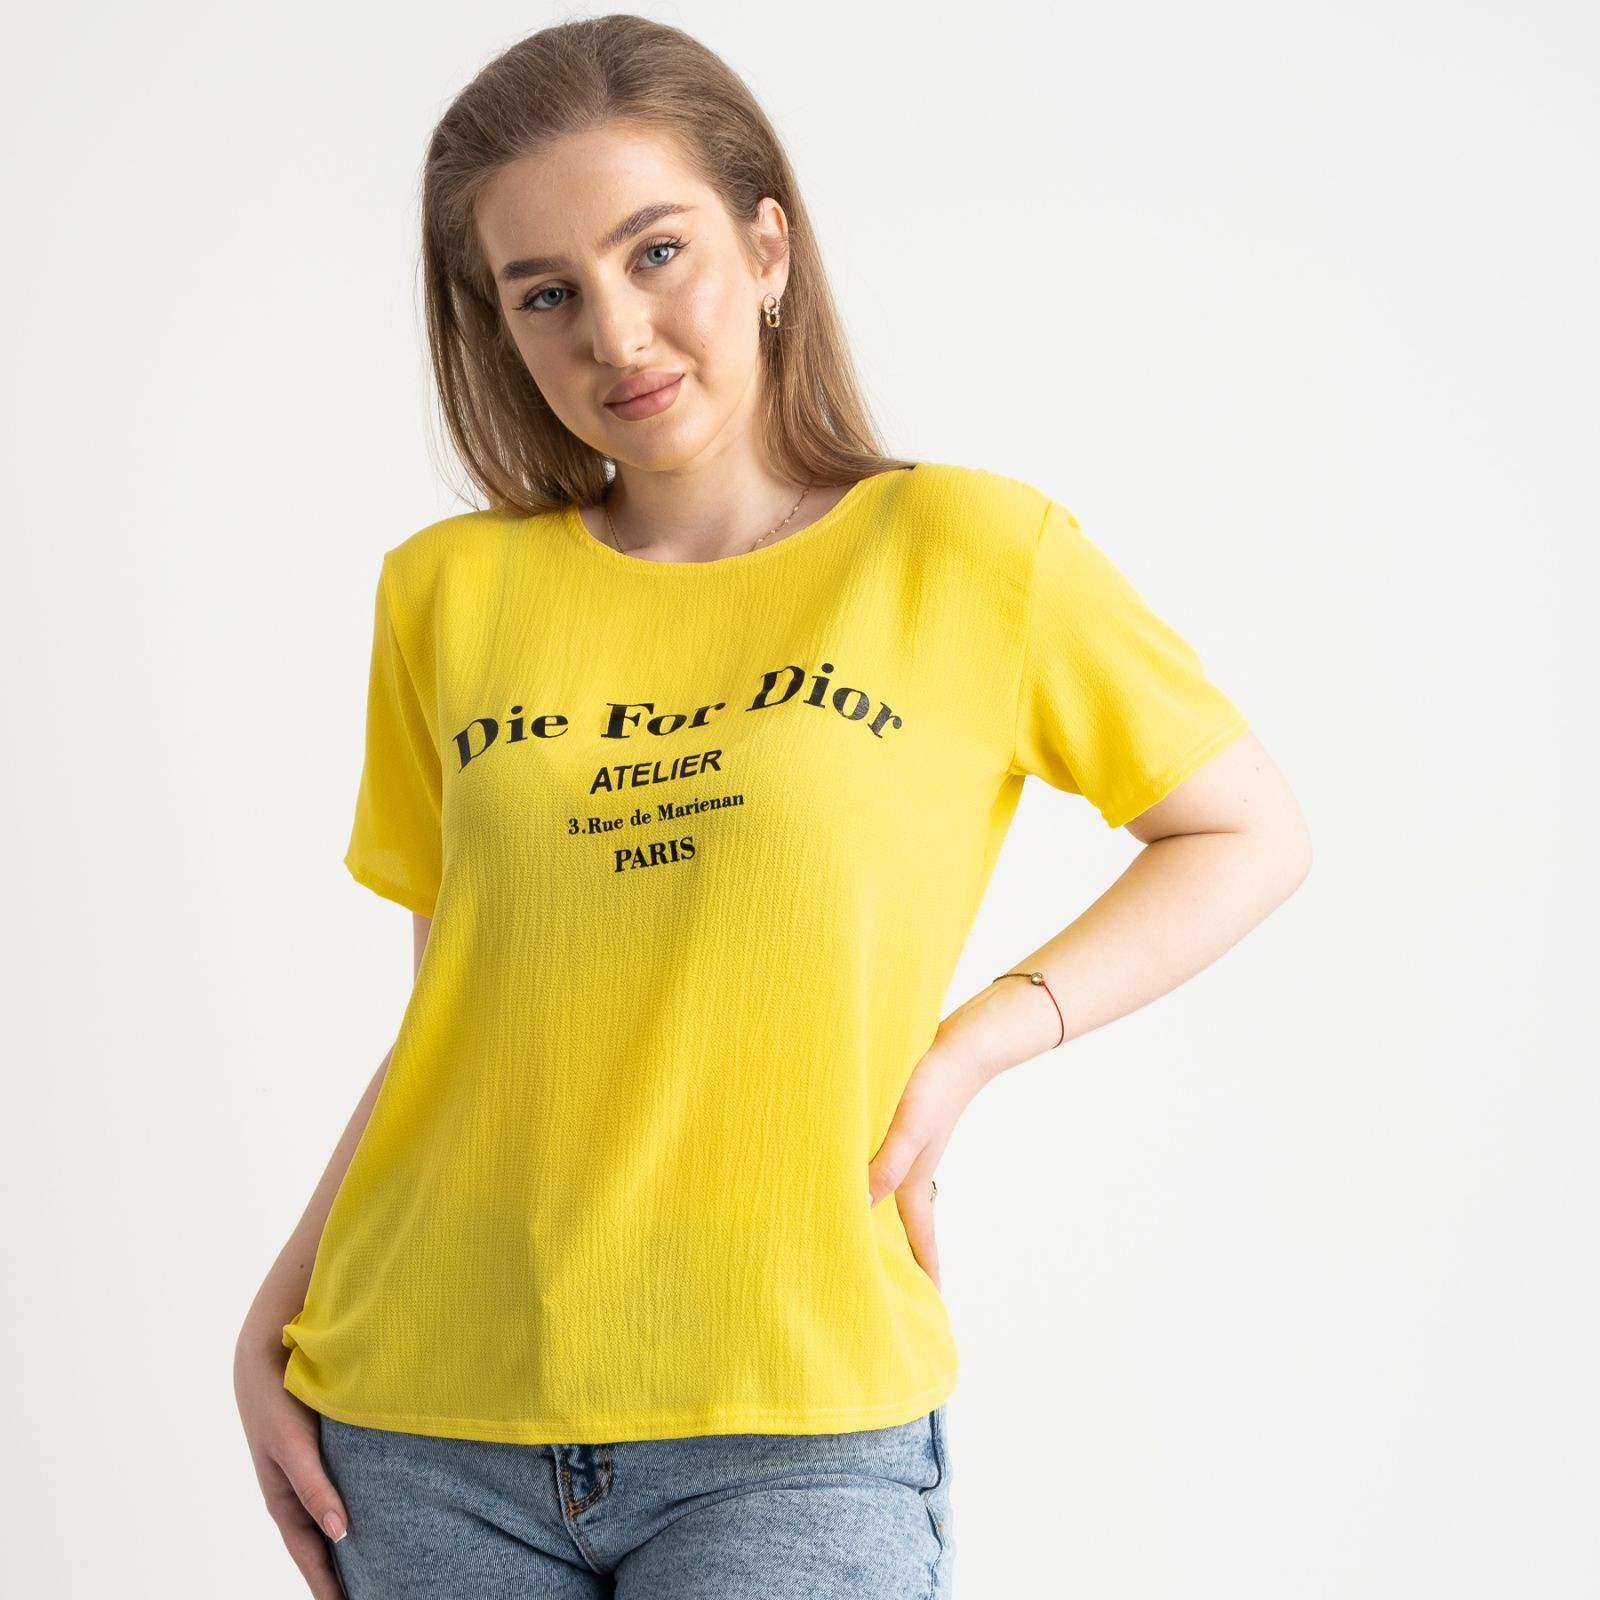 2024-6  желтая  футболка женская полубатальная с принтом (5 ед. размеры: 52.54.56.58.60)